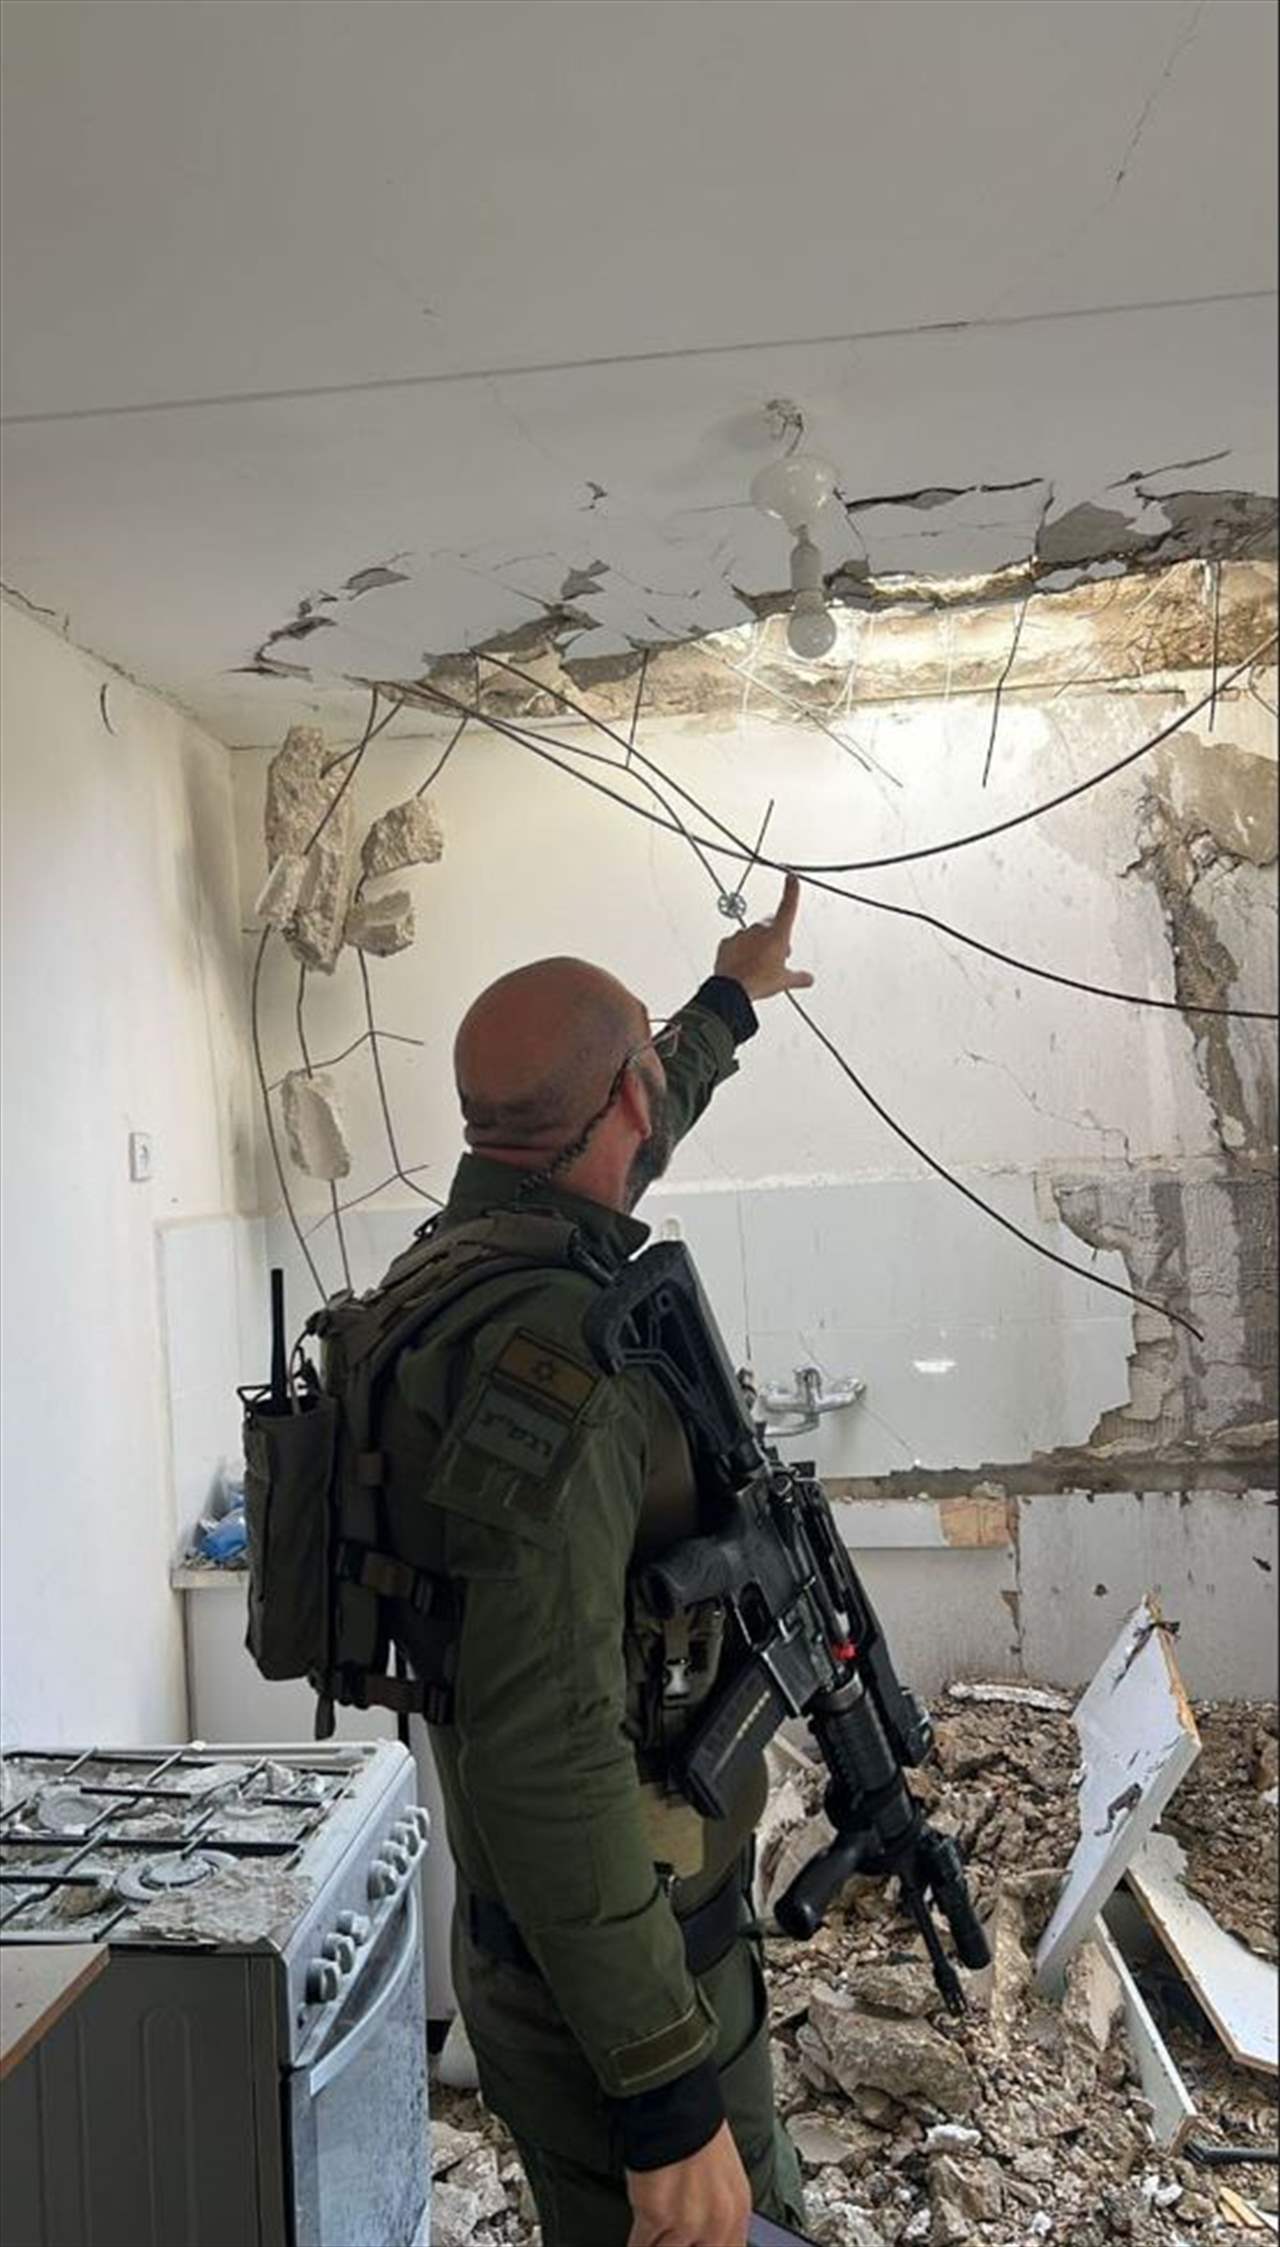 بالفيديو والصور - الاضرار التي لحقت بمبنى في كريات شمونة بعد استهداف المستوطنة برشقة صاروخية 